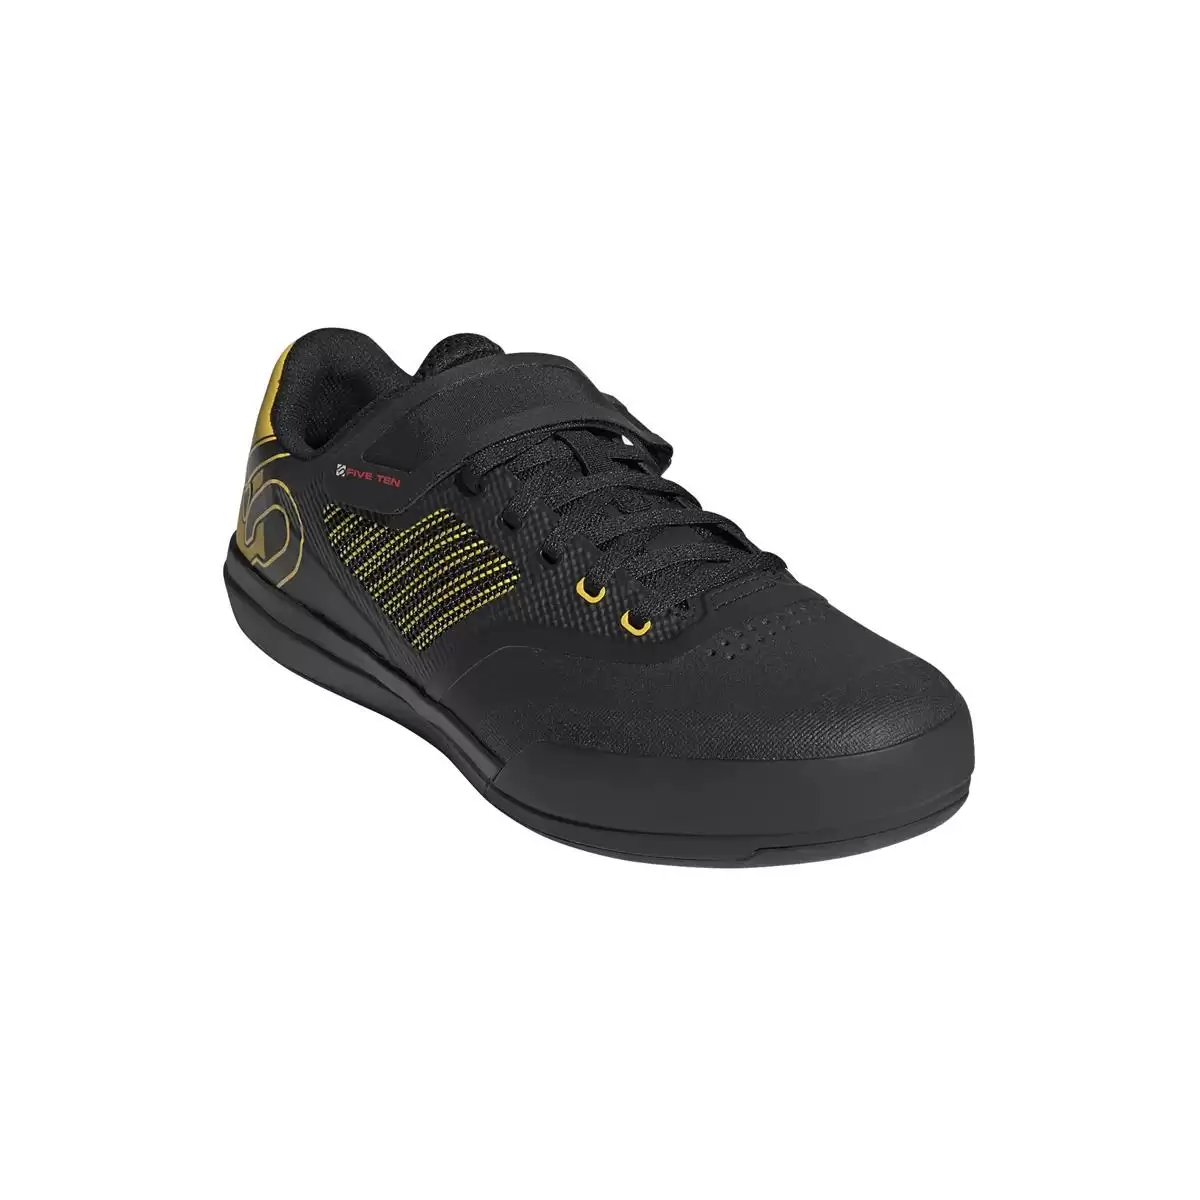 Chaussures VTT Hellcat Pro Noir/Jaune Taille 46,5 #1